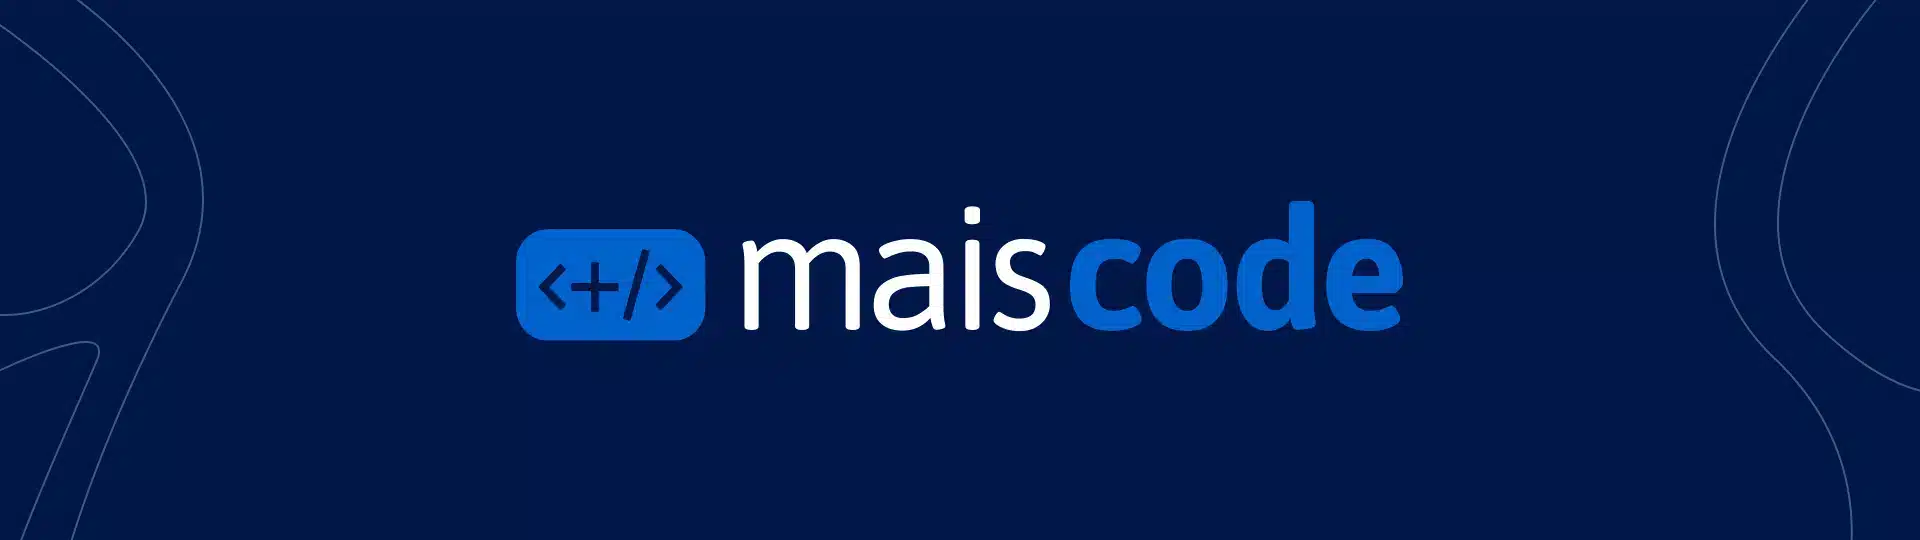 (c) Maiscode.com.br